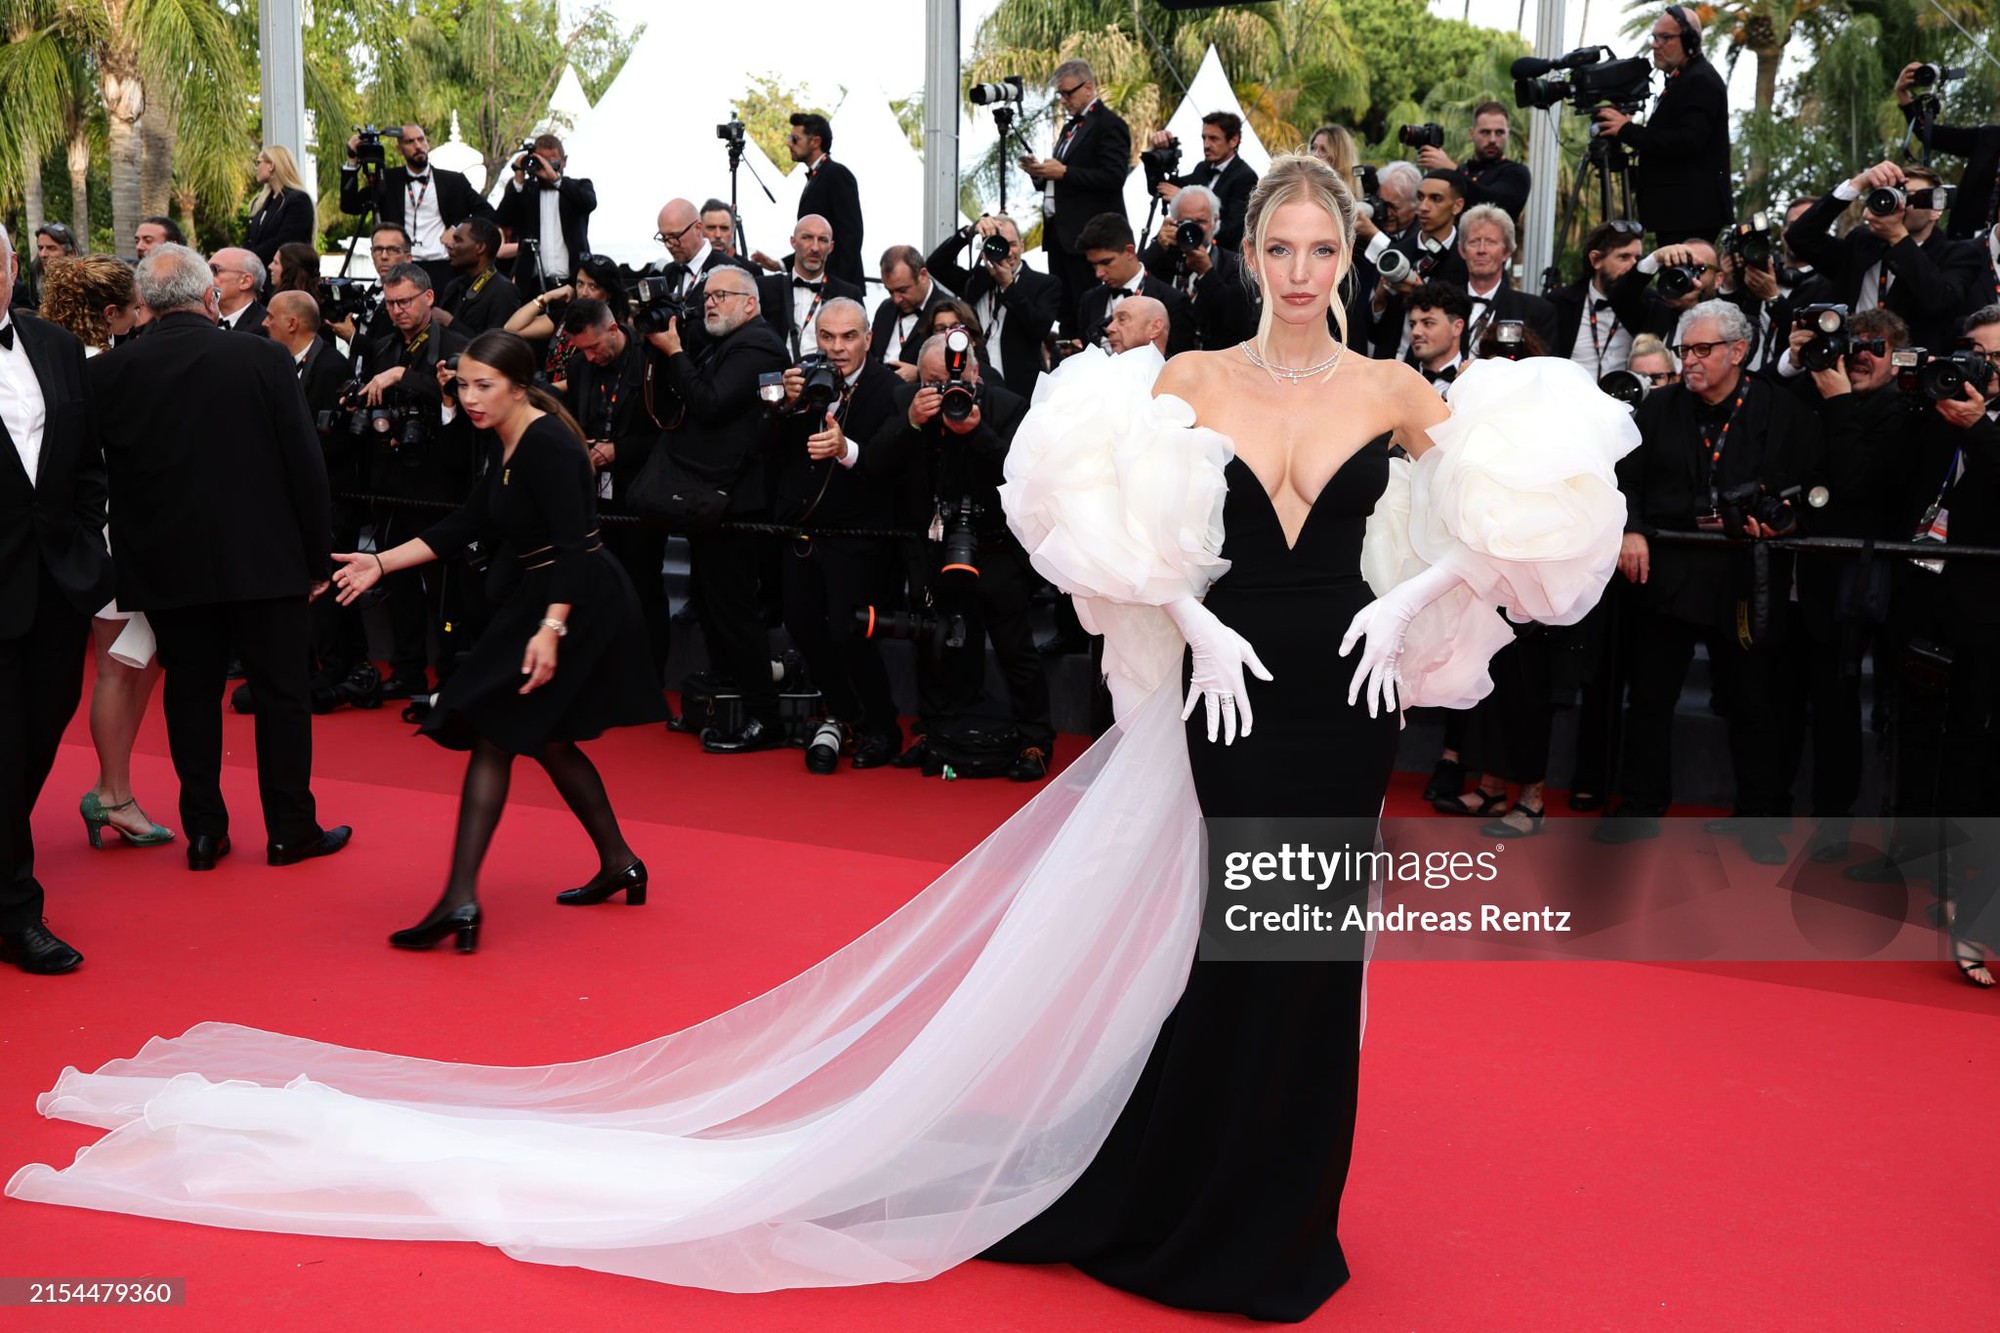 Thảm đỏ Cannes ngày 11: Bình An - Phương Nga lần đầu đổ bộ, siêu mẫu Coco Rocha - Á hậu Hoàn vũ cực slay - Ảnh 20.